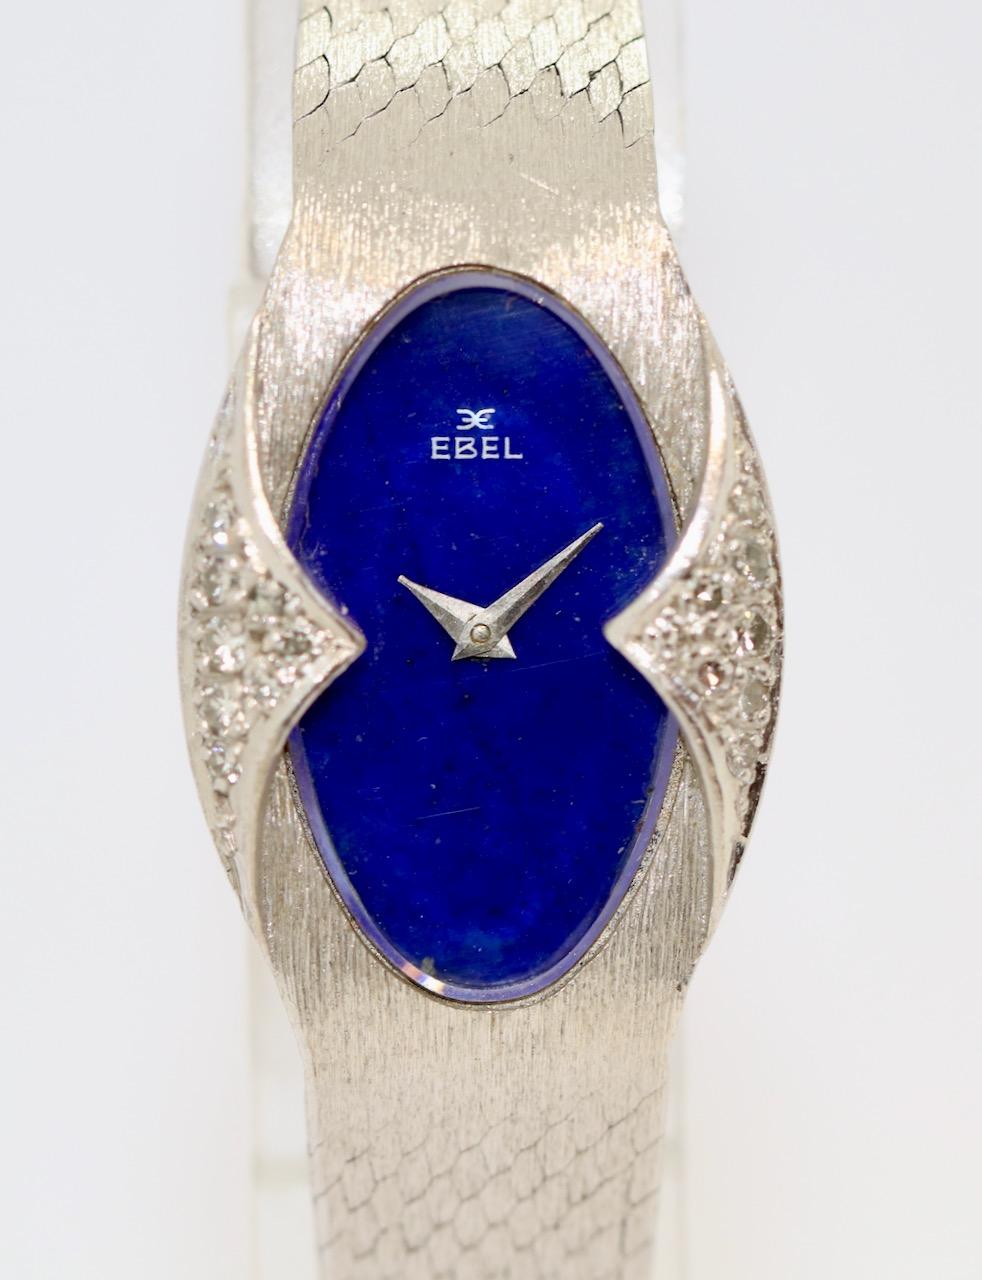 Montre-bracelet pour dames en or blanc 18 carats par Ebel, avec diamants et cadran en lapis-lazuli

Le bracelet a été allongé. Il peut être raccourci à tout moment si vous le souhaitez.

Certificat d'authenticité inclus.